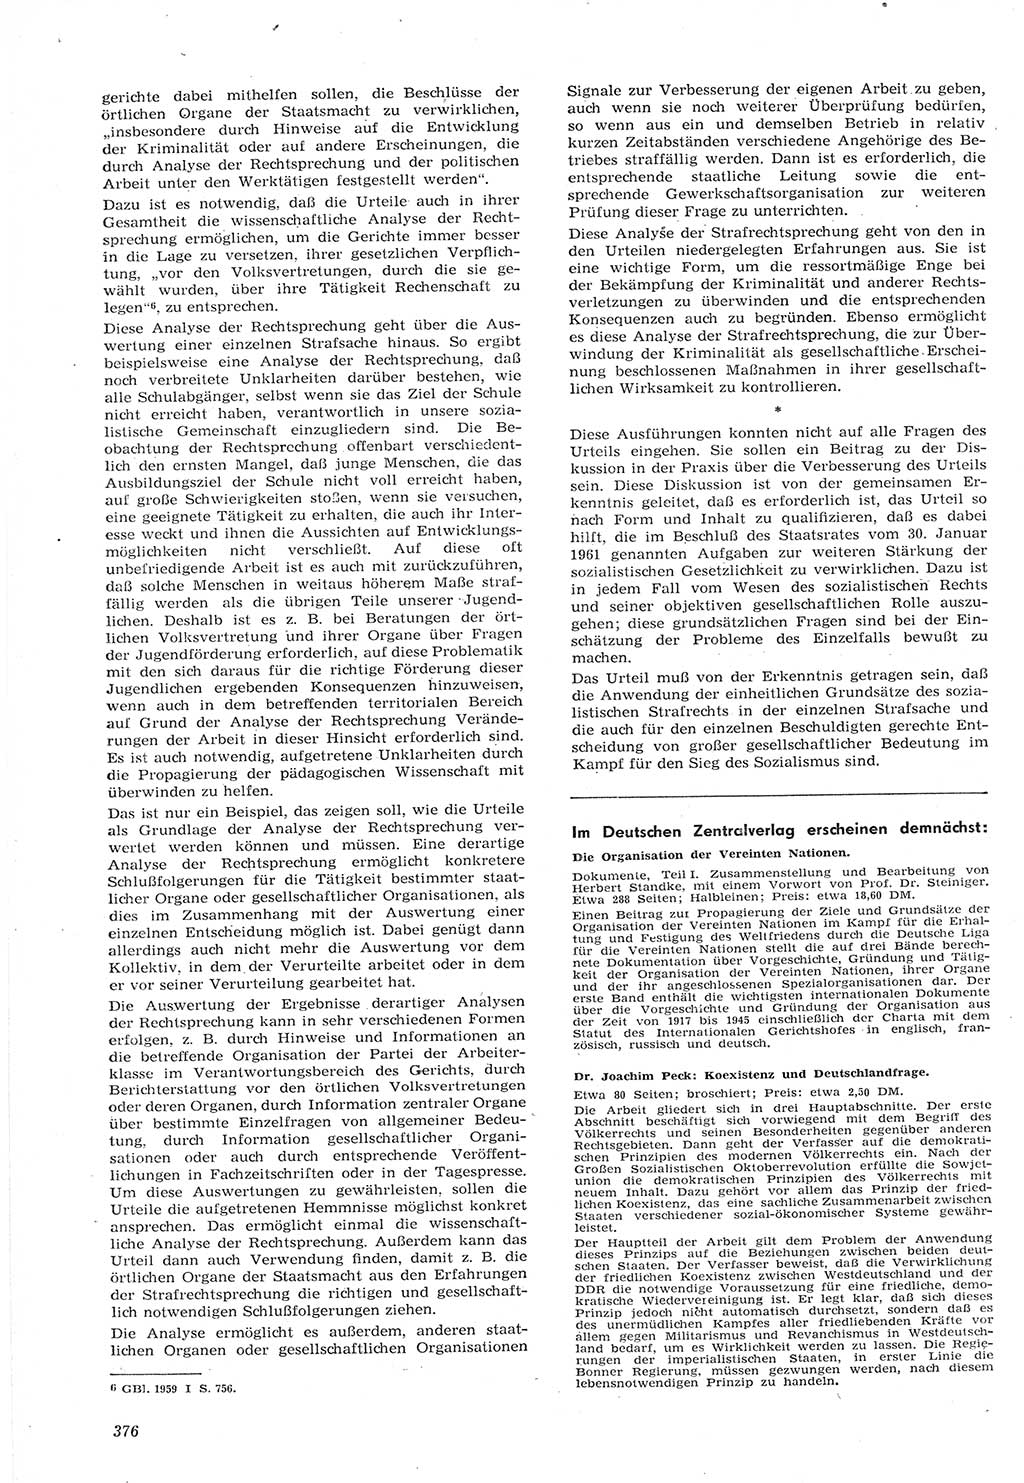 Neue Justiz (NJ), Zeitschrift für Recht und Rechtswissenschaft [Deutsche Demokratische Republik (DDR)], 15. Jahrgang 1961, Seite 376 (NJ DDR 1961, S. 376)